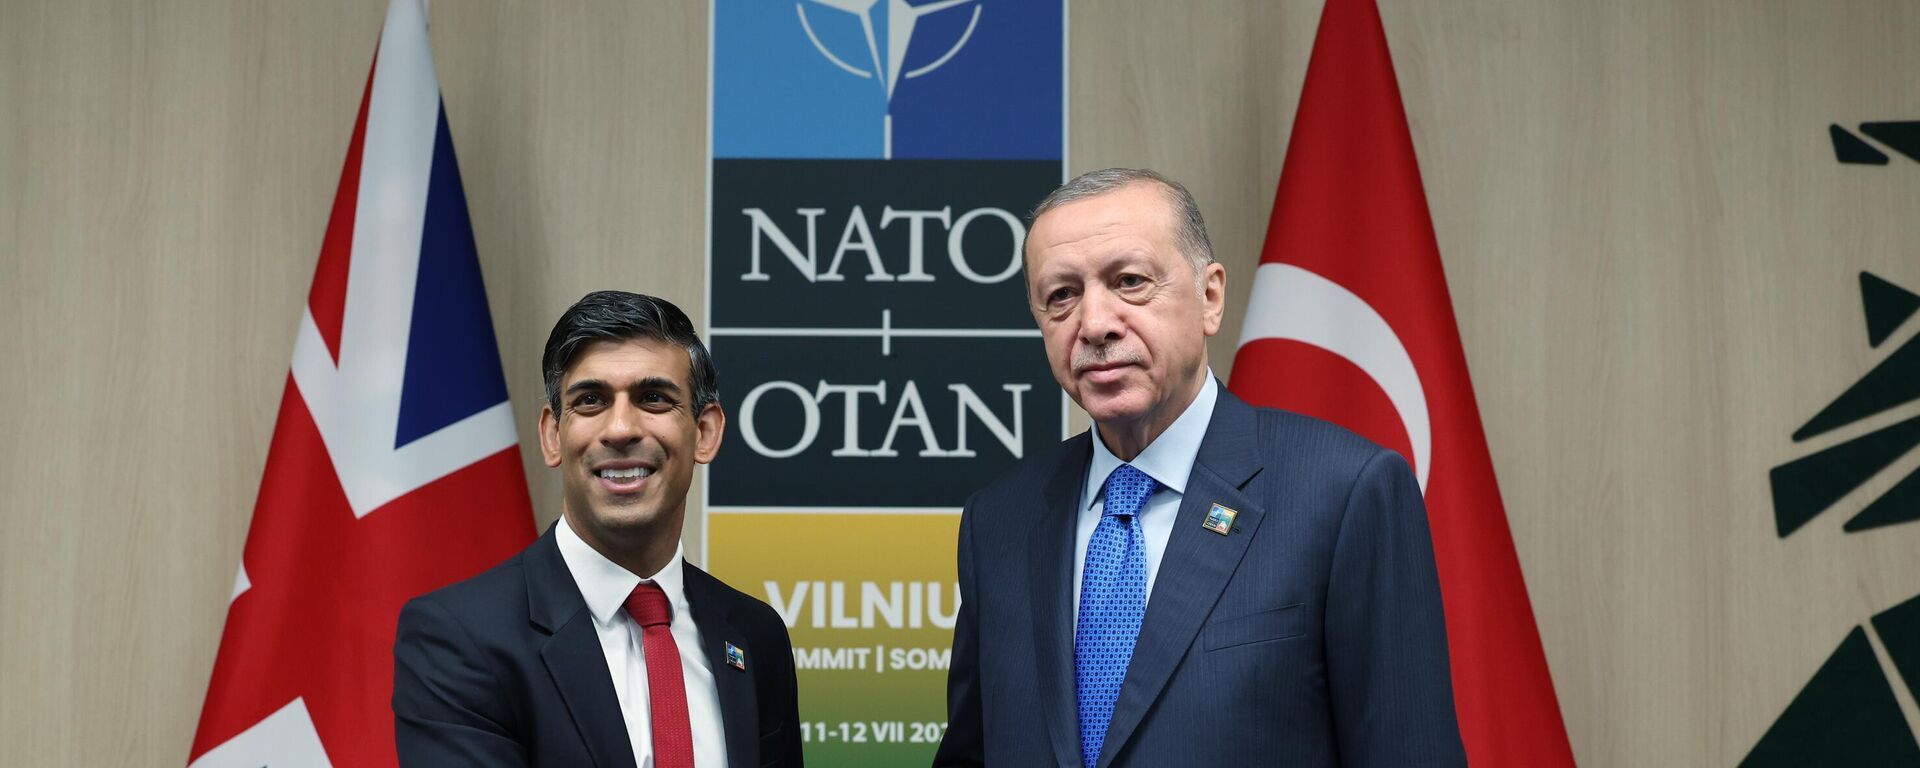 Cumhurbaşkanı Recep Tayyip Erdoğan, NATO Devlet ve Hükümet Başkanları Zirvesi'ne katılmak üzere geldiği Vilnius'ta, İngiltere Başbakanı Rishi Sunak ile görüştü. - Sputnik Türkiye, 1920, 16.10.2023